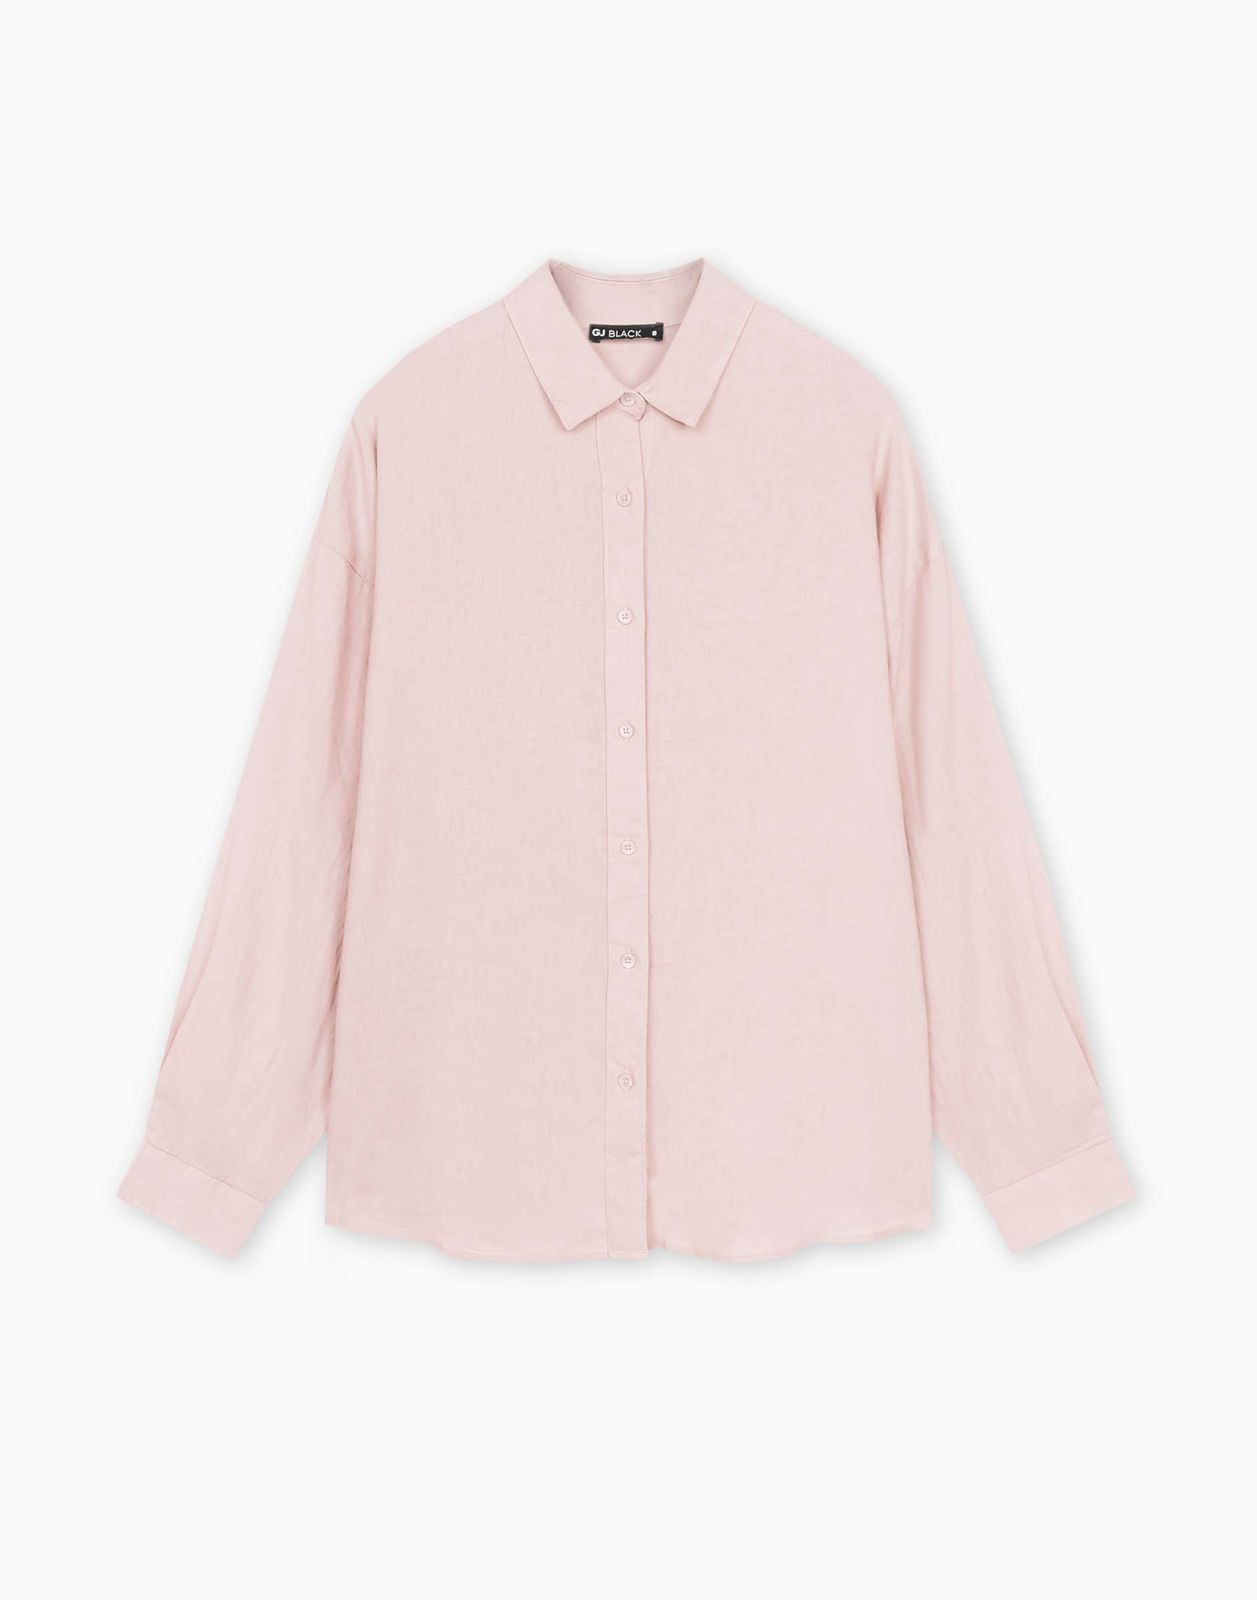 Рубашка женская Gloria Jeans GWT003968 светло-розовый M/170